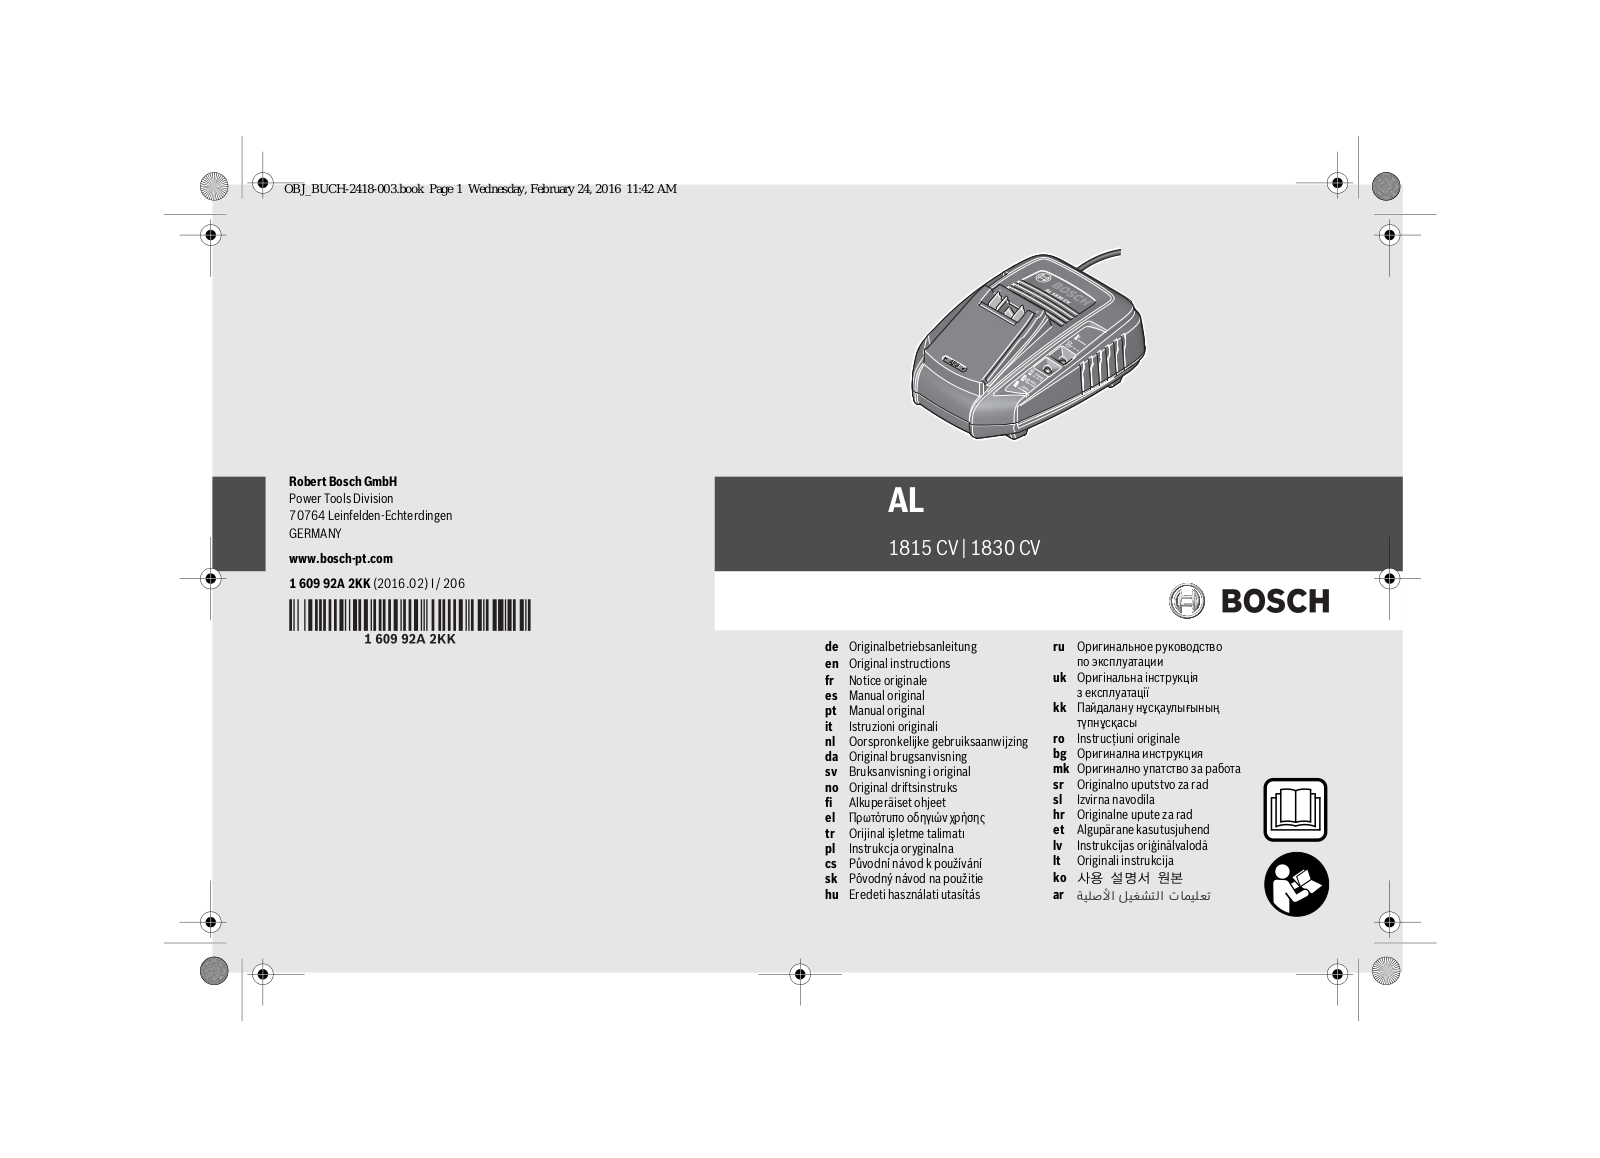 Bosch AL 1830 CV User Manual